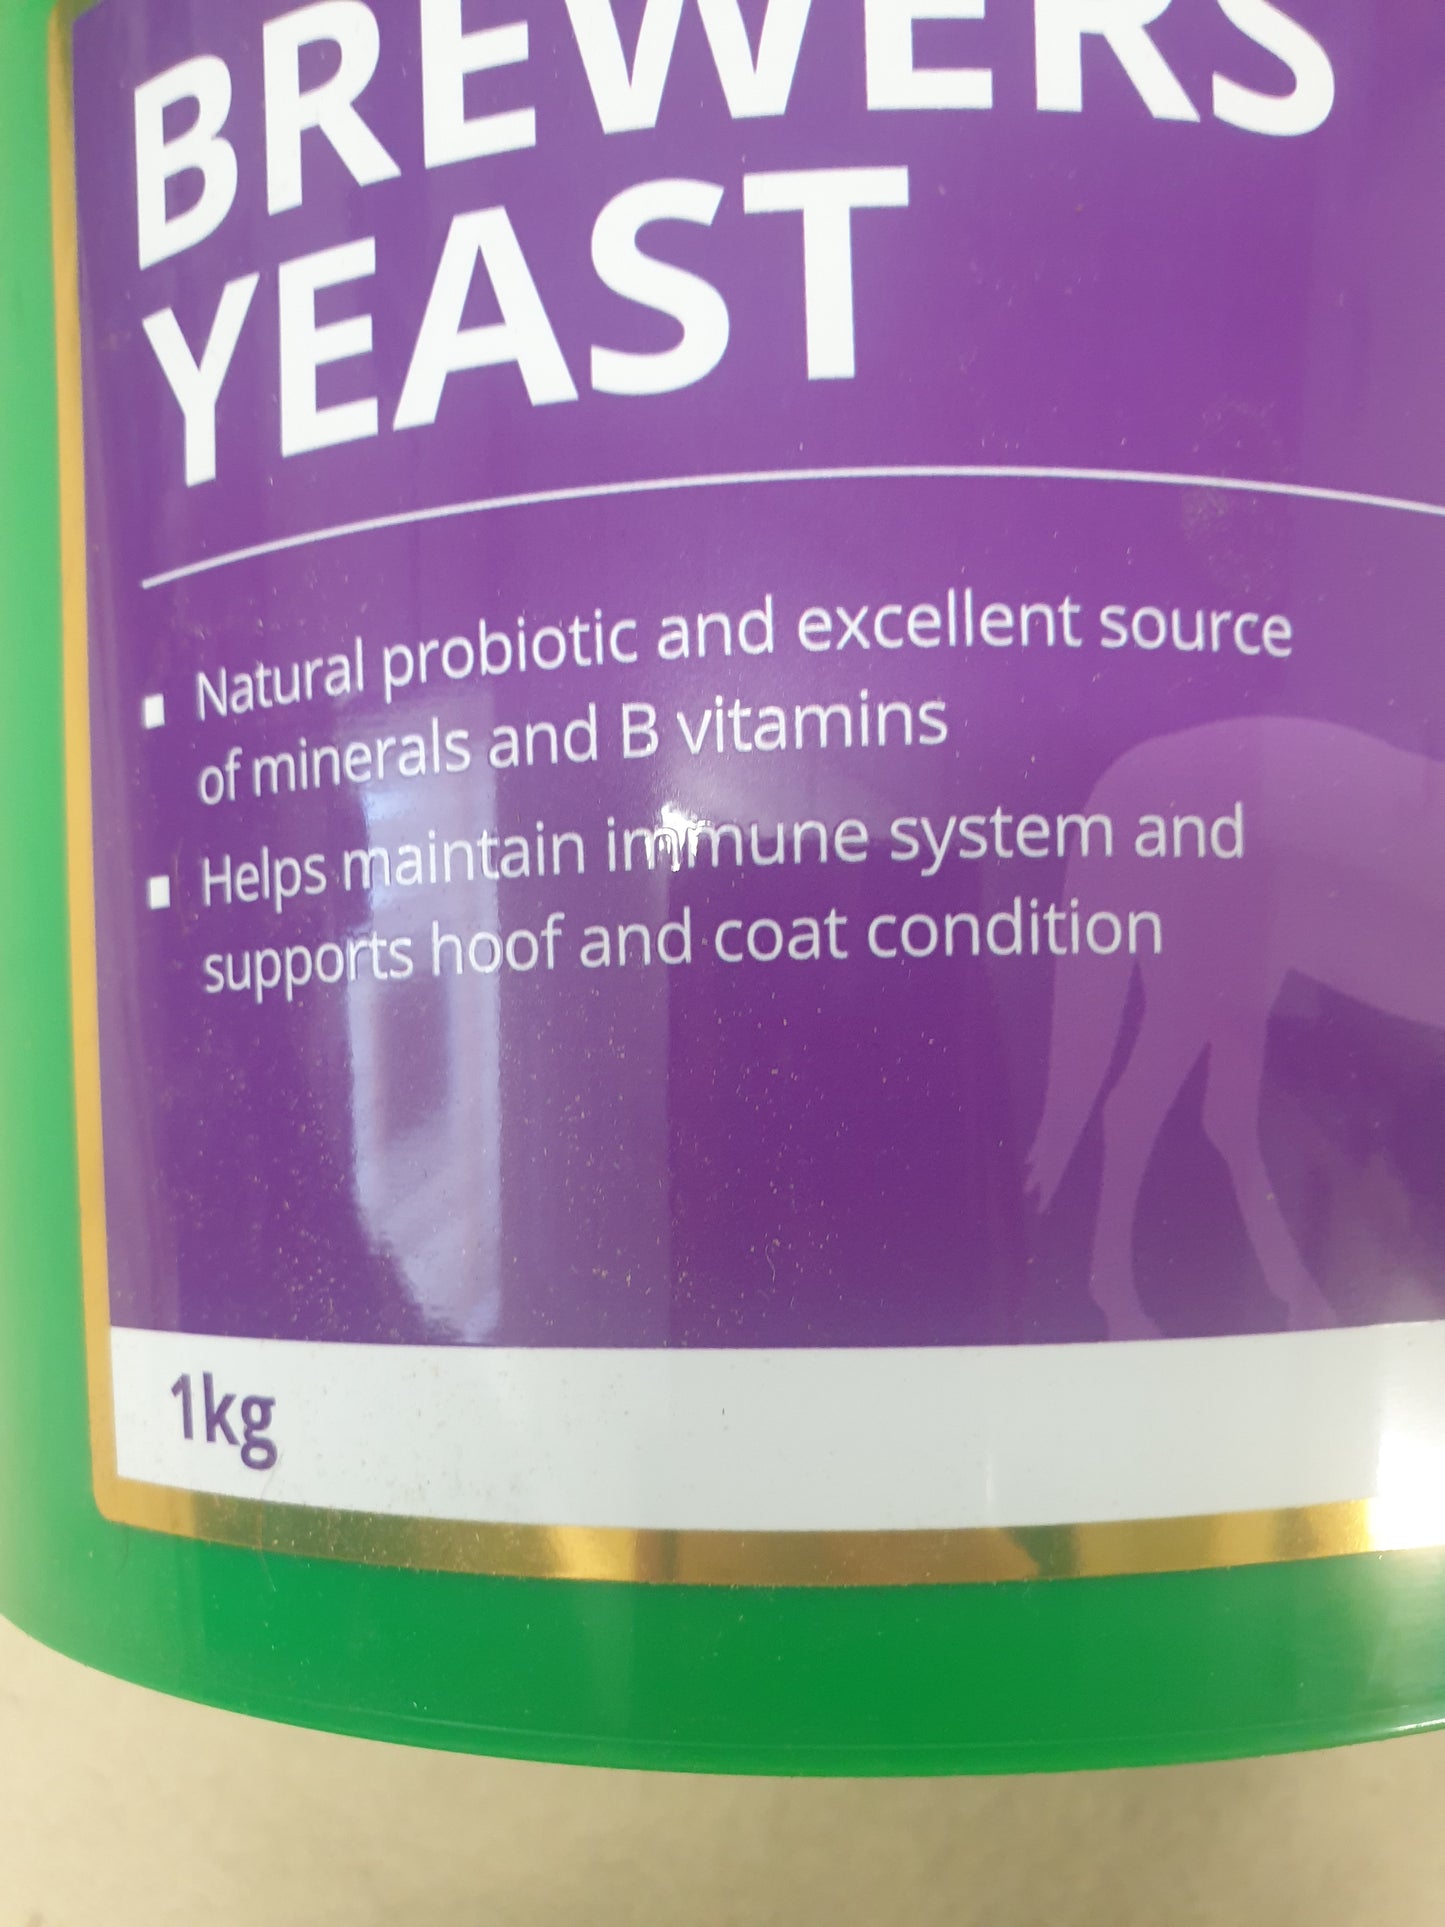 Global herbs brewers yeast 1kg tub FREE POSTAGE 🟢